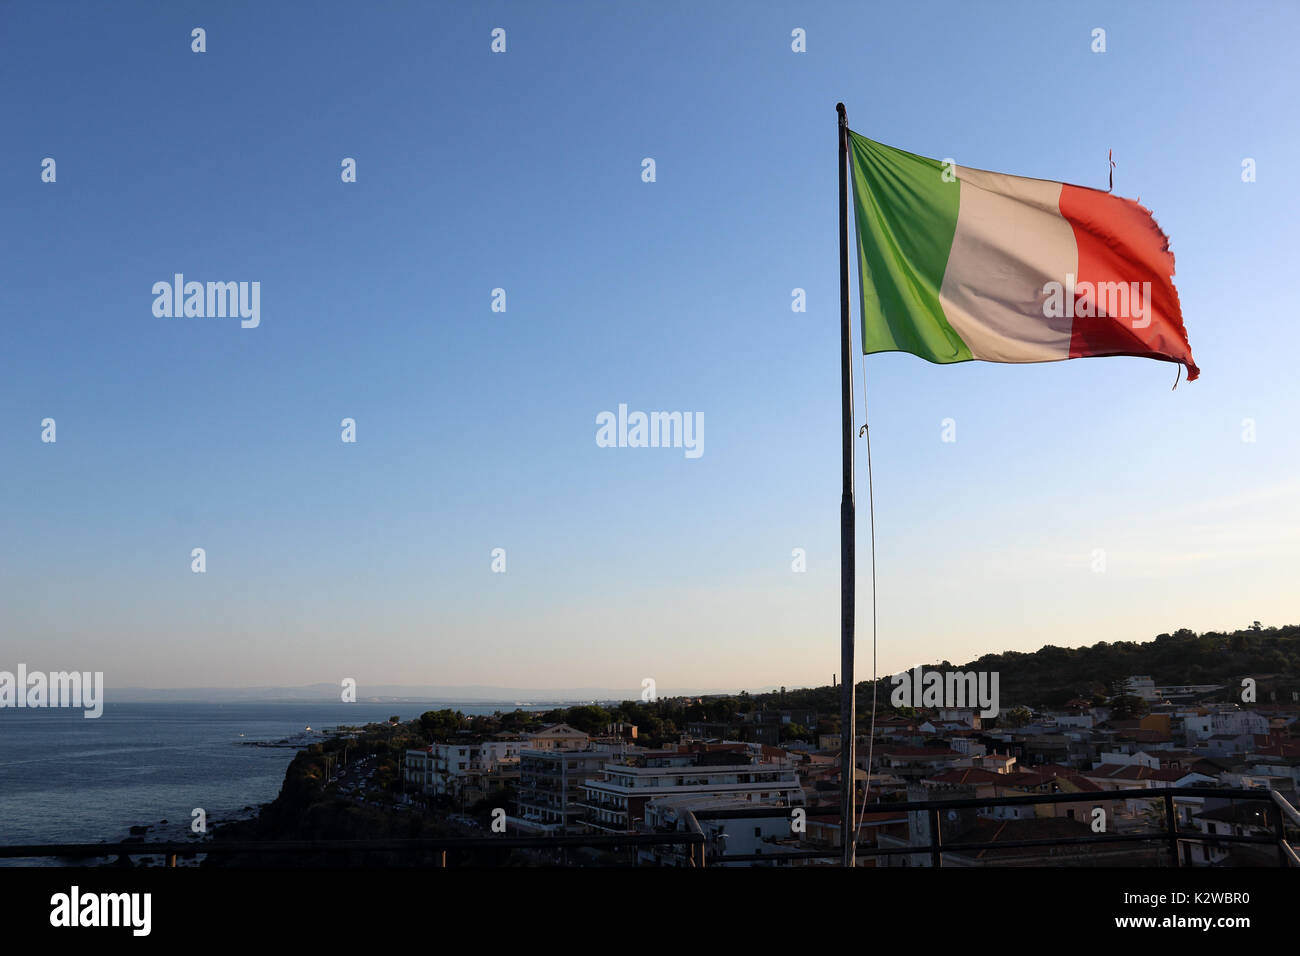 Italienische Flagge über eine Stadt im Sommer fliegen, mit klaren, blauen Himmel hinter. Aci Castello, Sizilien. Stockfoto